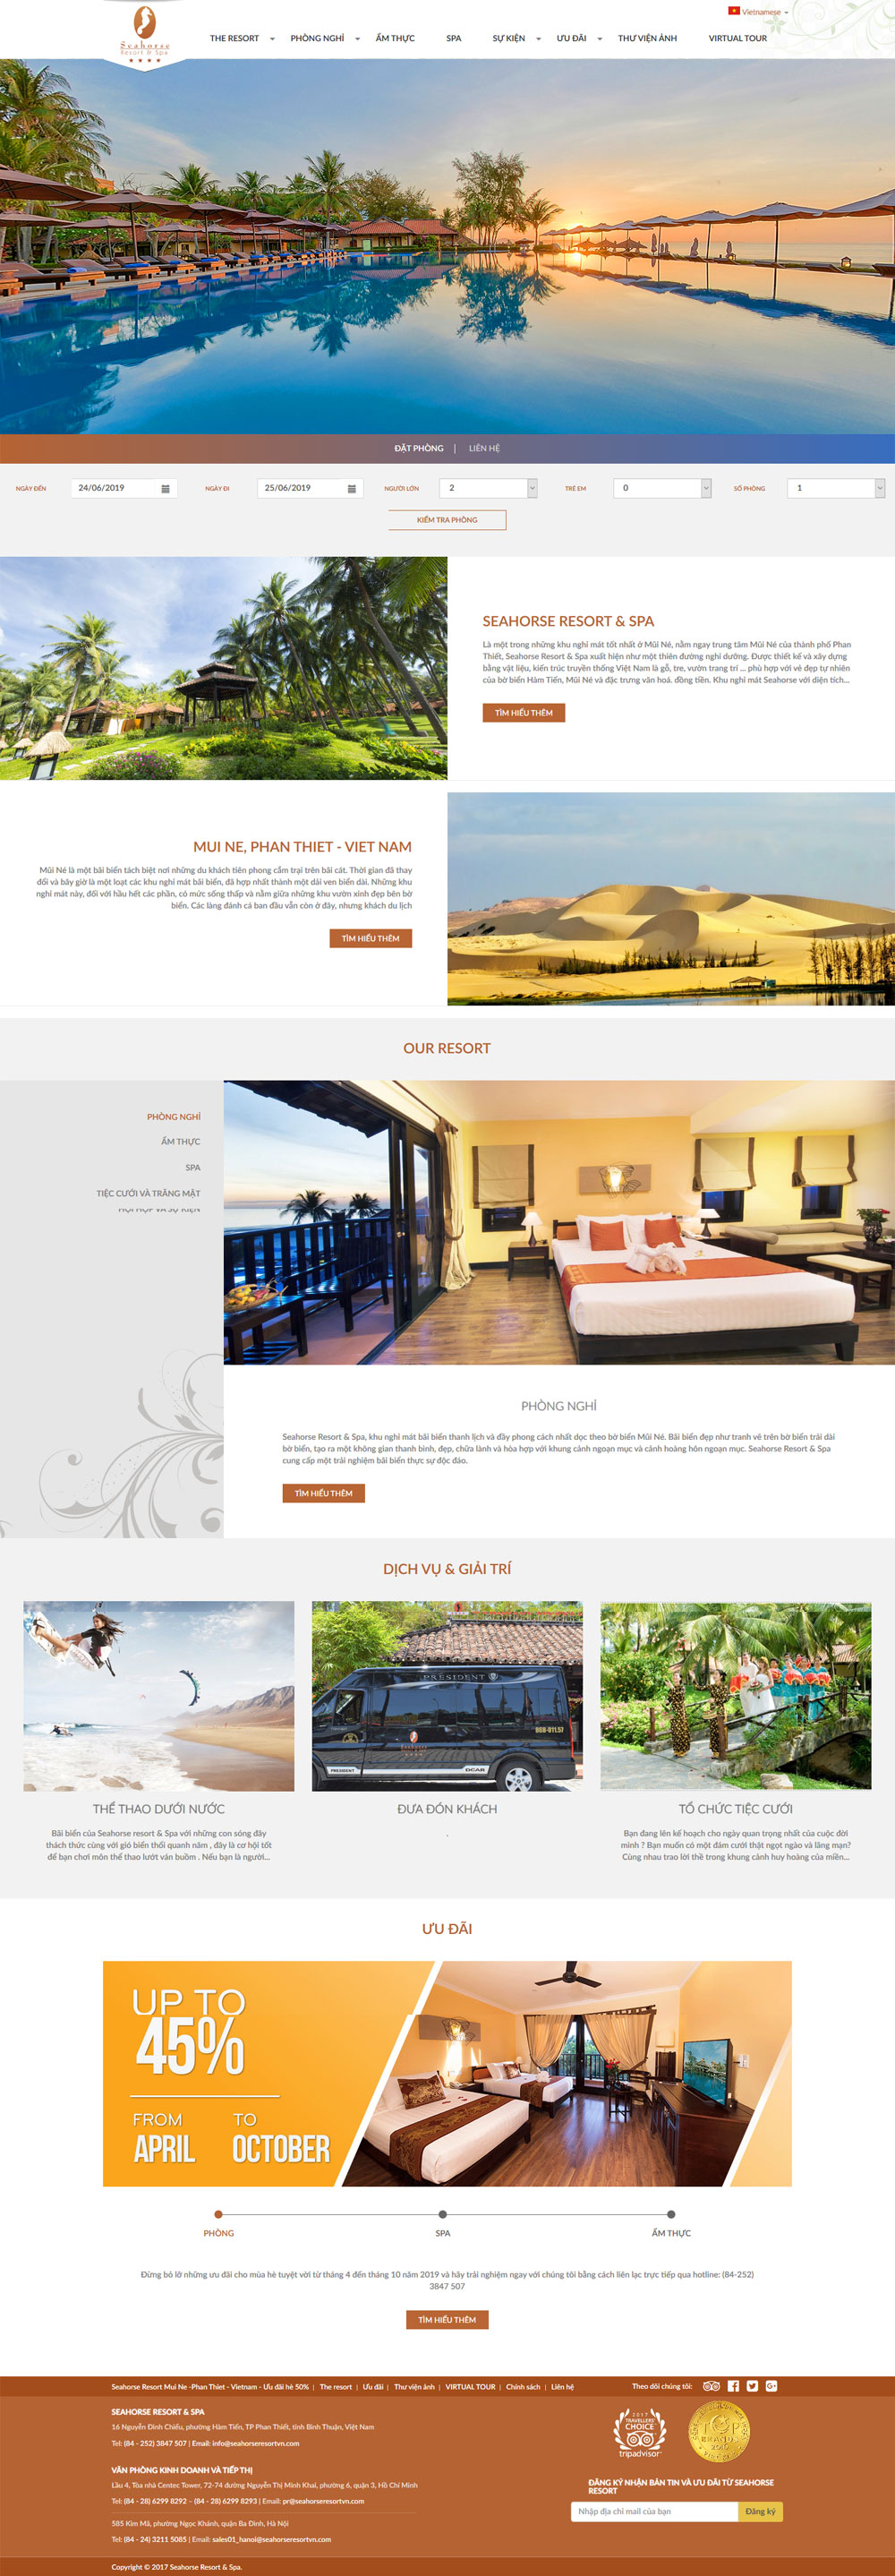 Giao diện web khách hàng Seahorse Resort & Spa thiết kế tại ADC Việt Nam